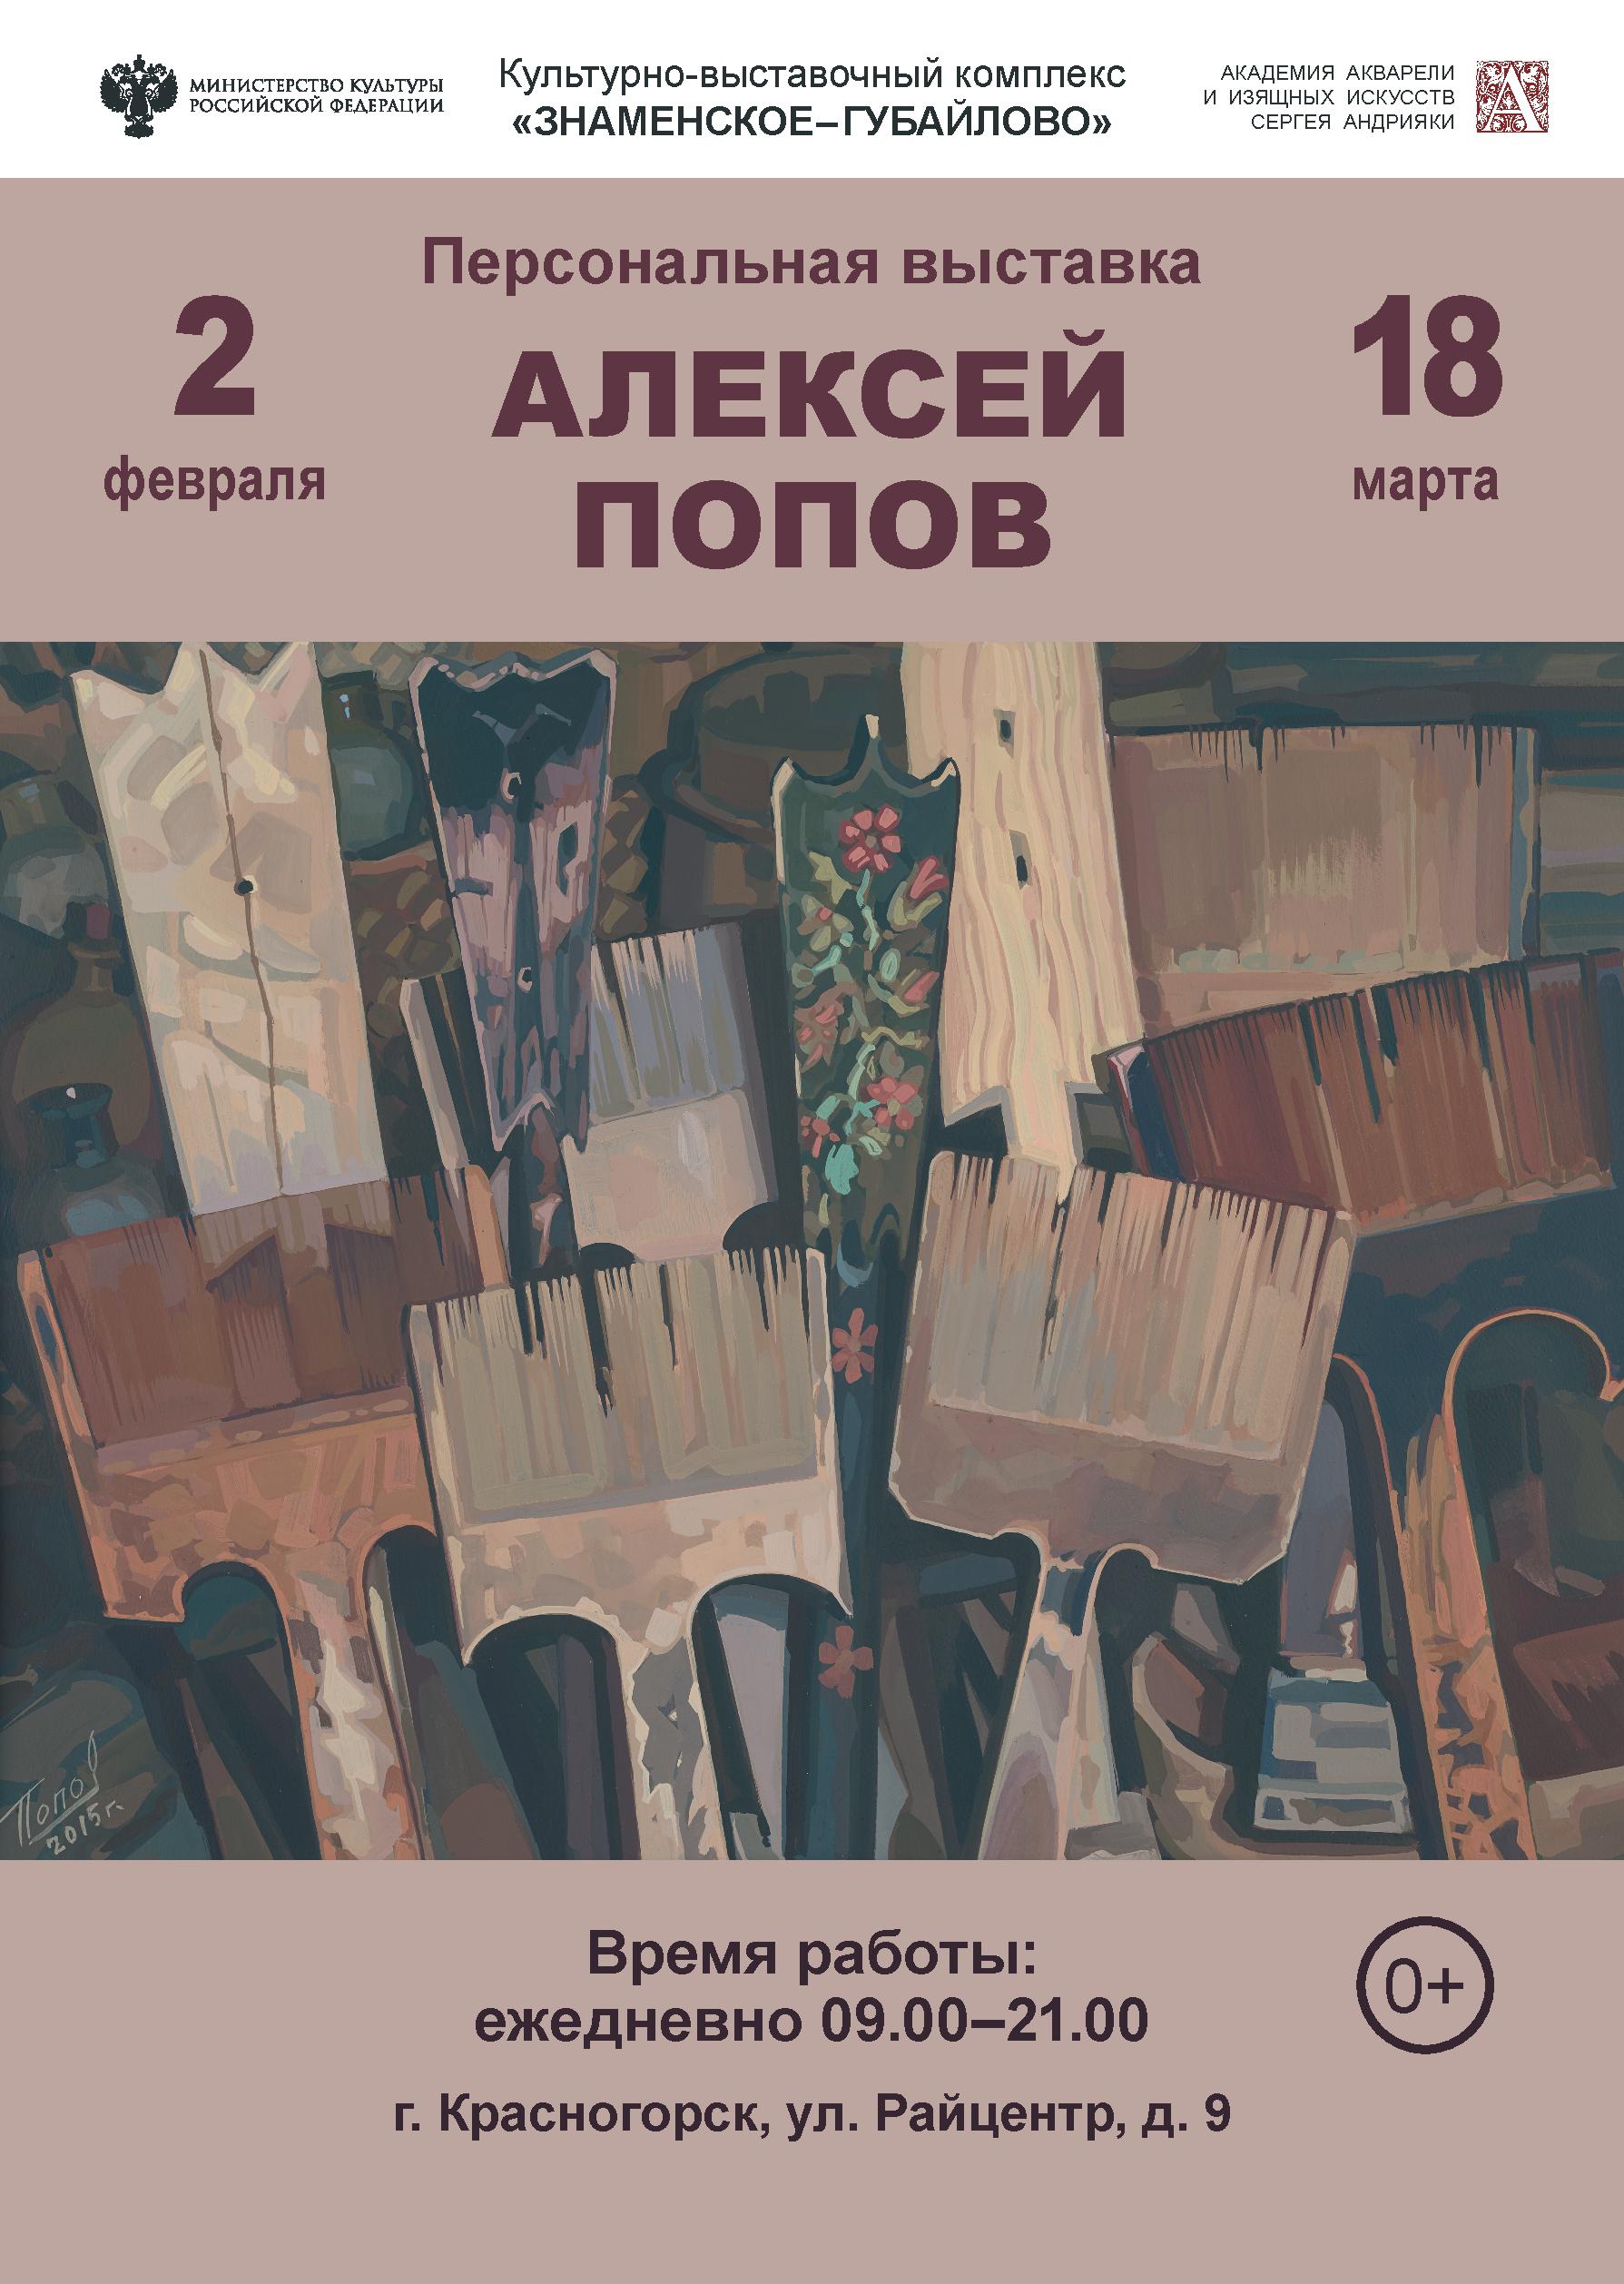 Персональная выставка Алексея Попова пройдет в комплексе «Знаменское-Губайлово»